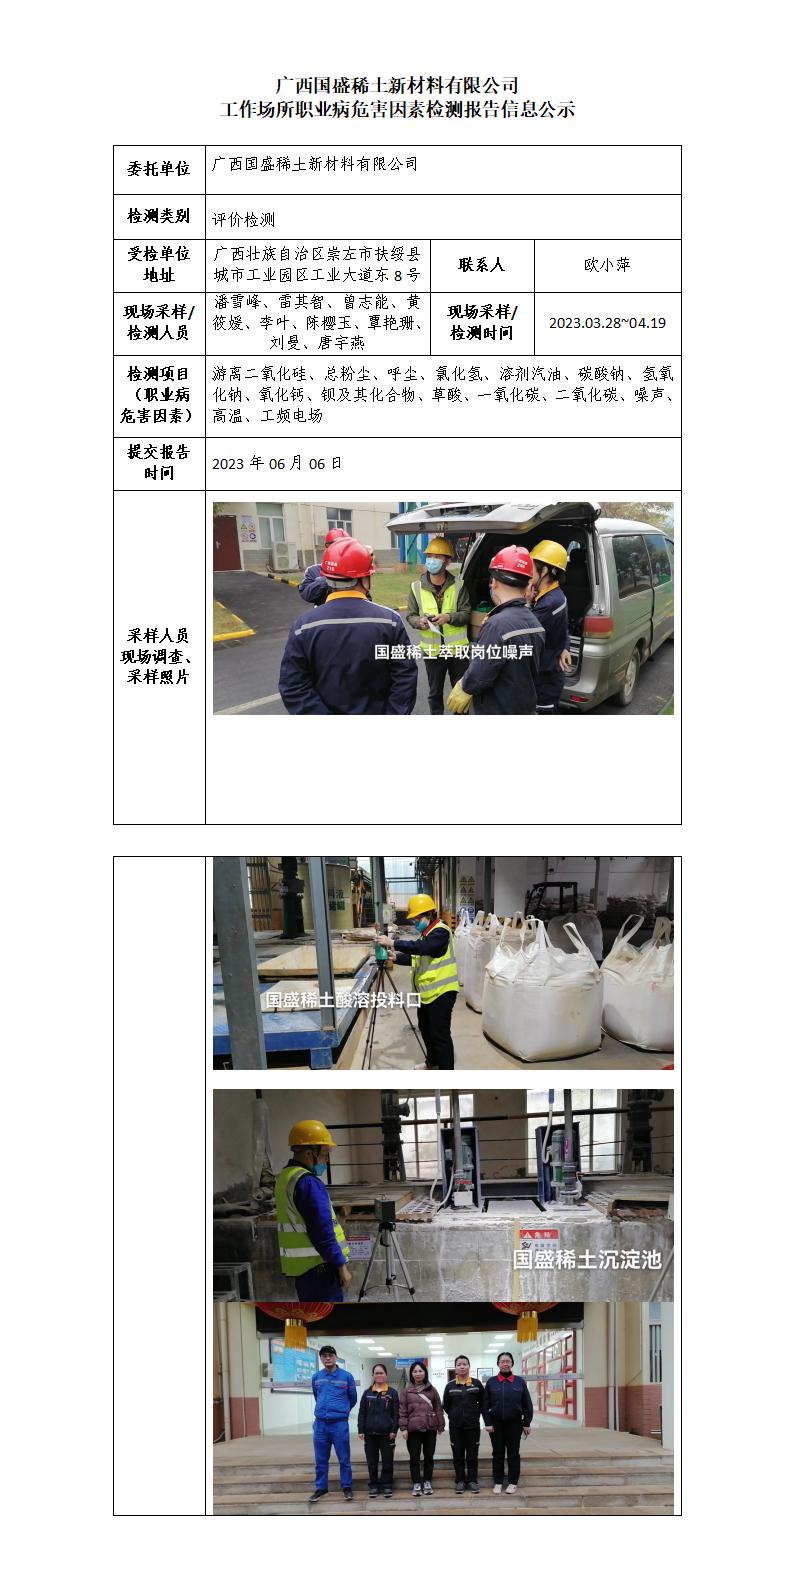 廣西國盛稀土新材料有限公司工作場所職業病危害因素檢測報告信息公示